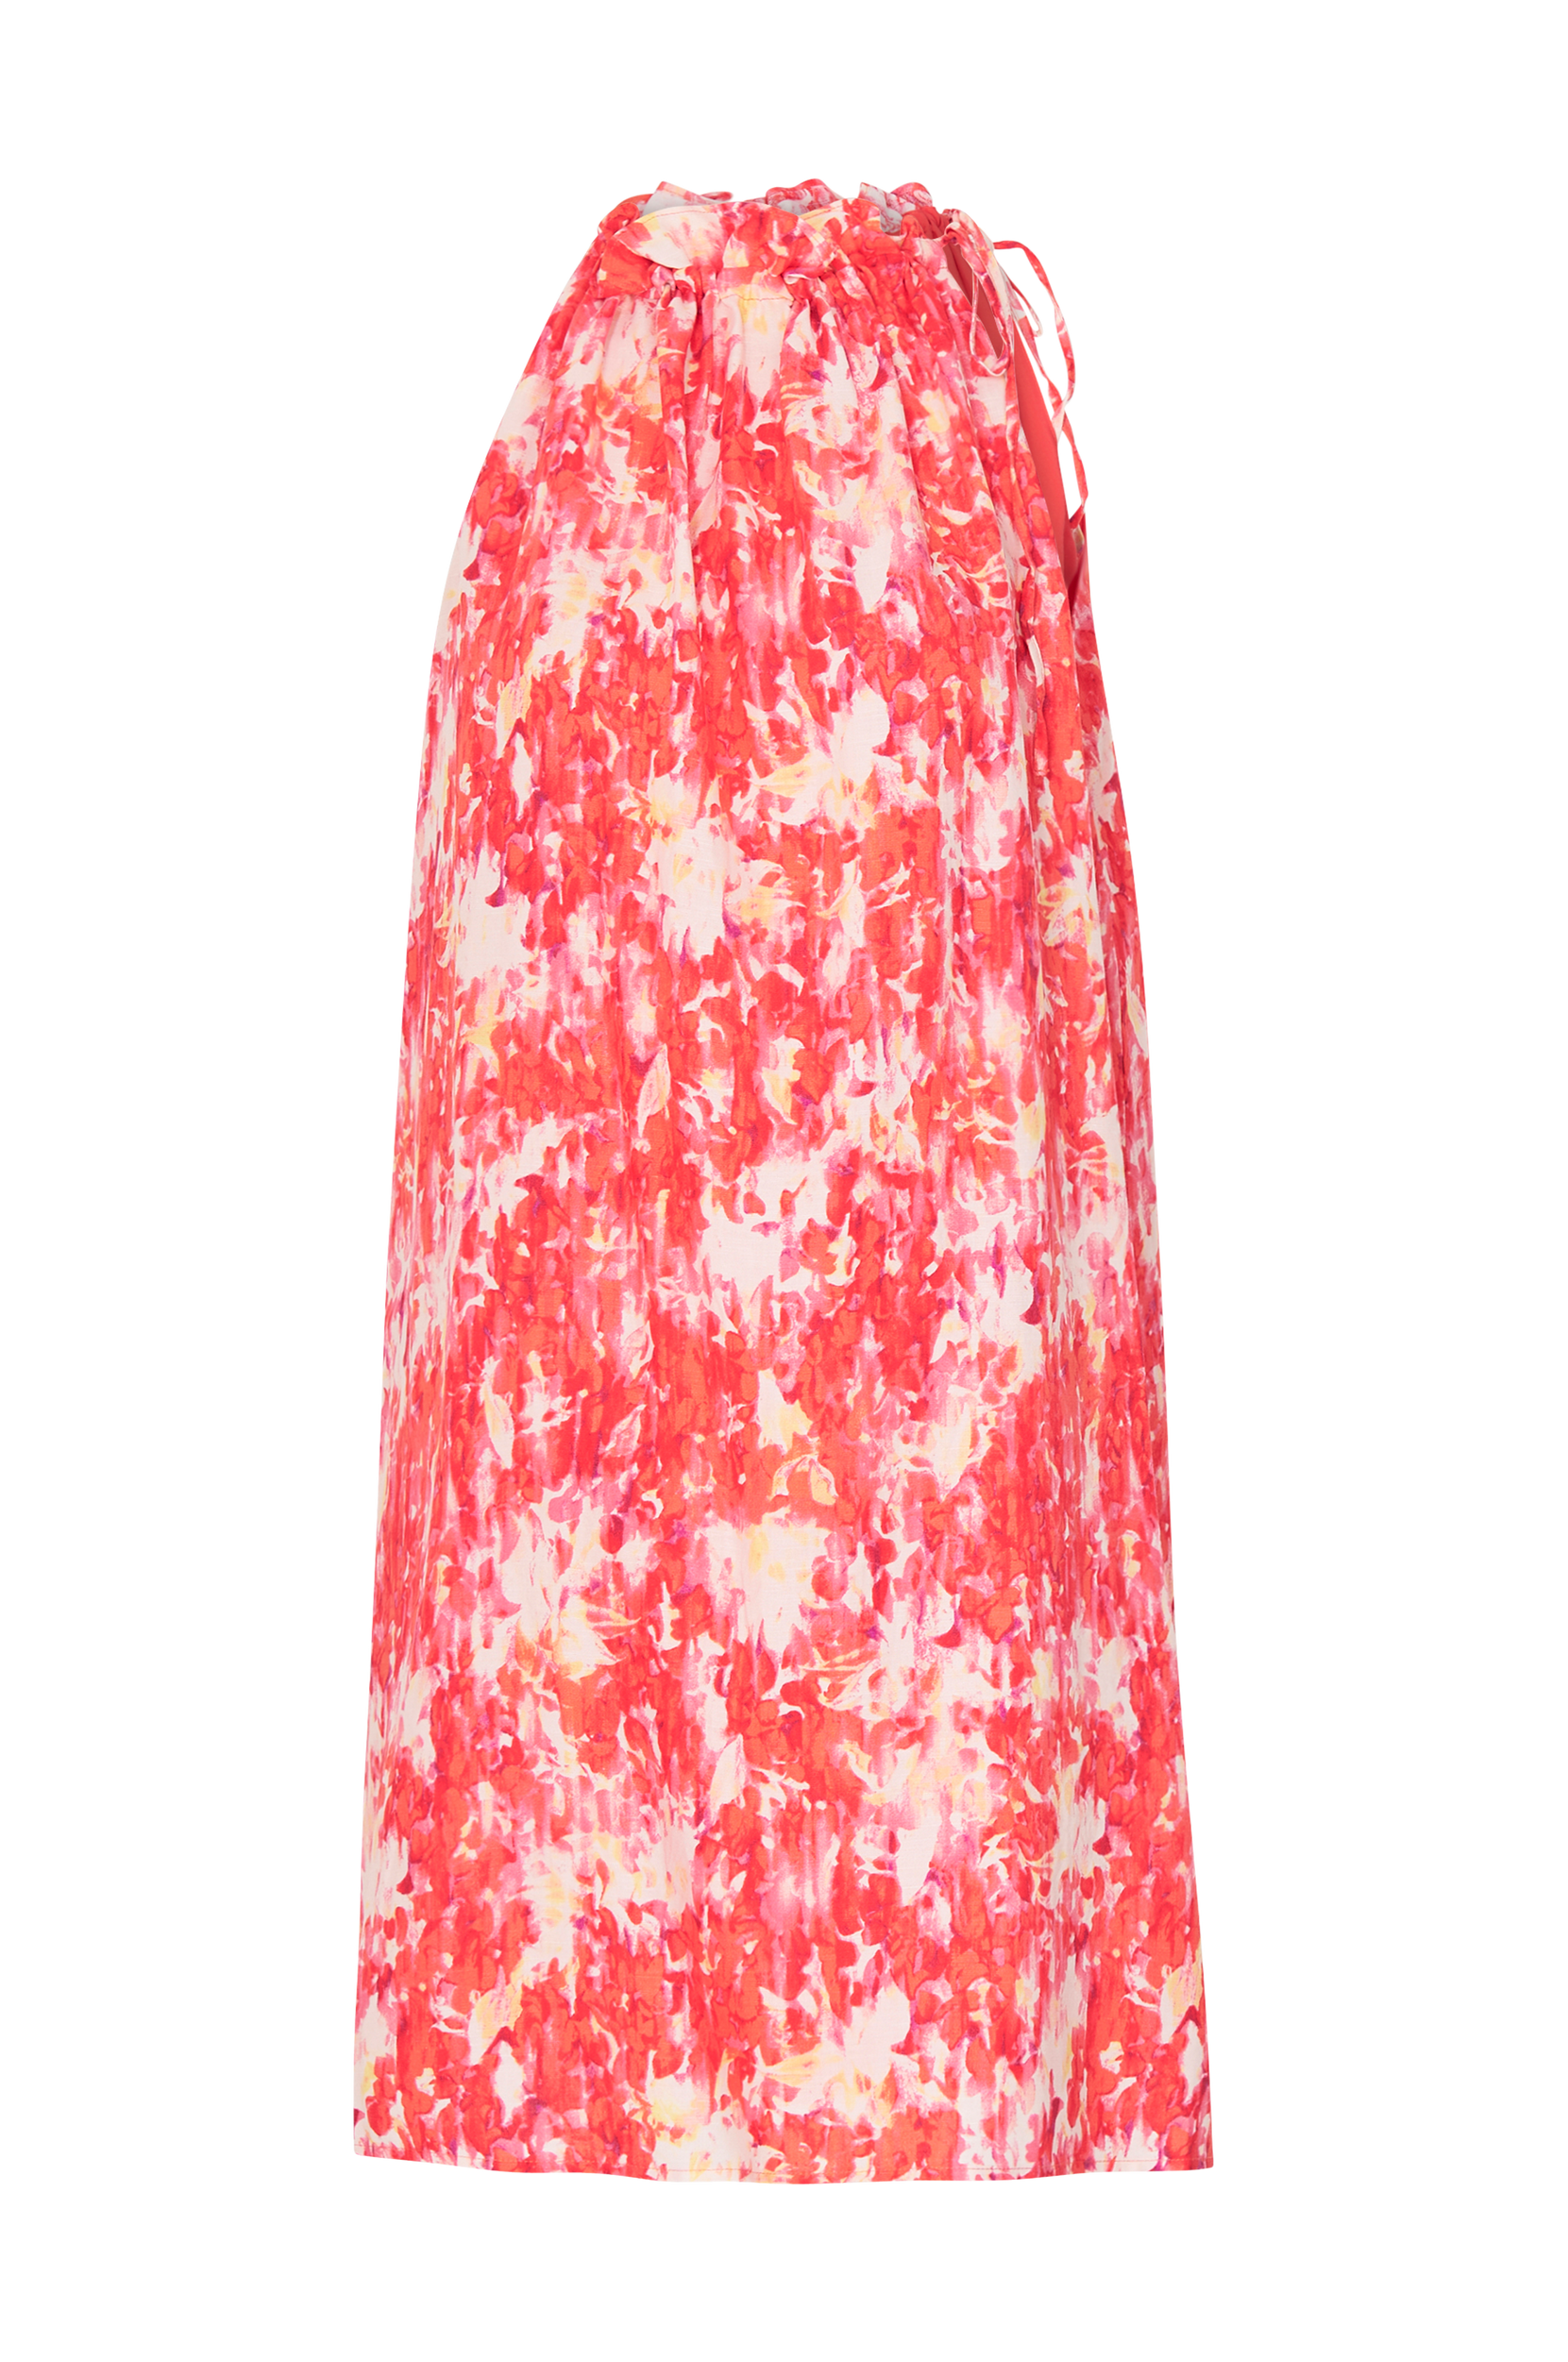 Esprit - Viscose - Rød - - Kjoler - Tøj til kvinder (29151674)